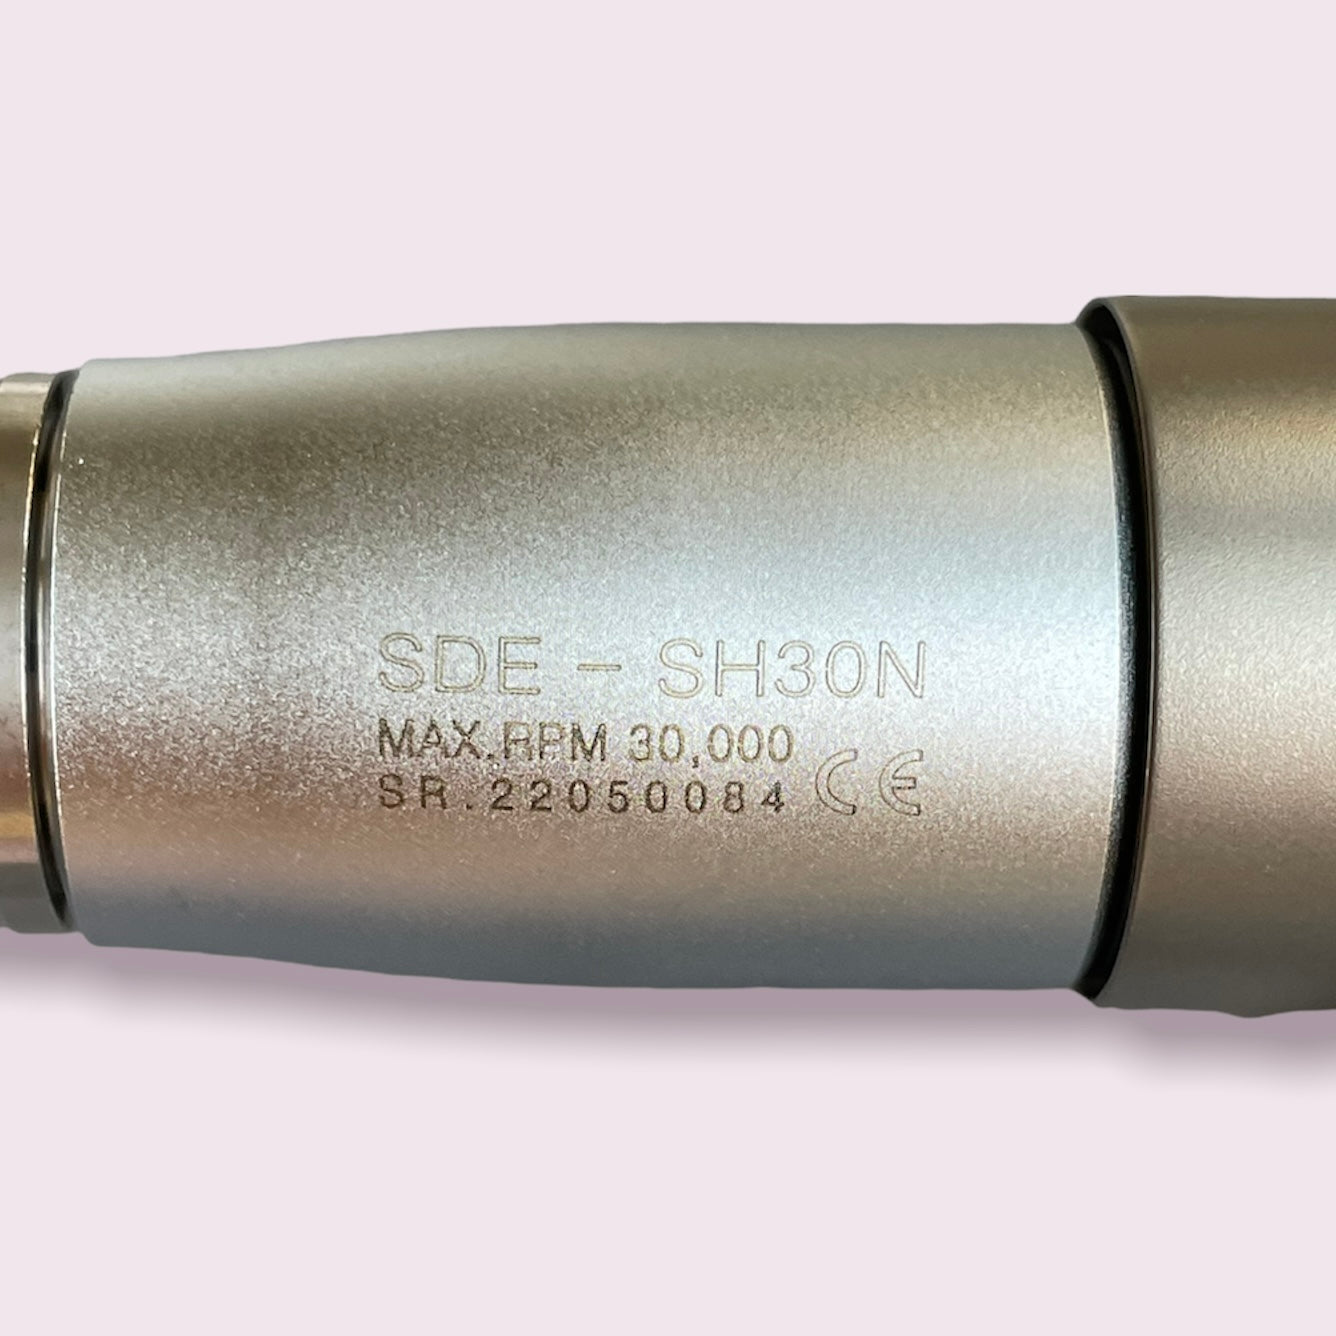 Micro Motor Handpiece SH30N by SAEYANG / Marathon 30K RPM, Korea